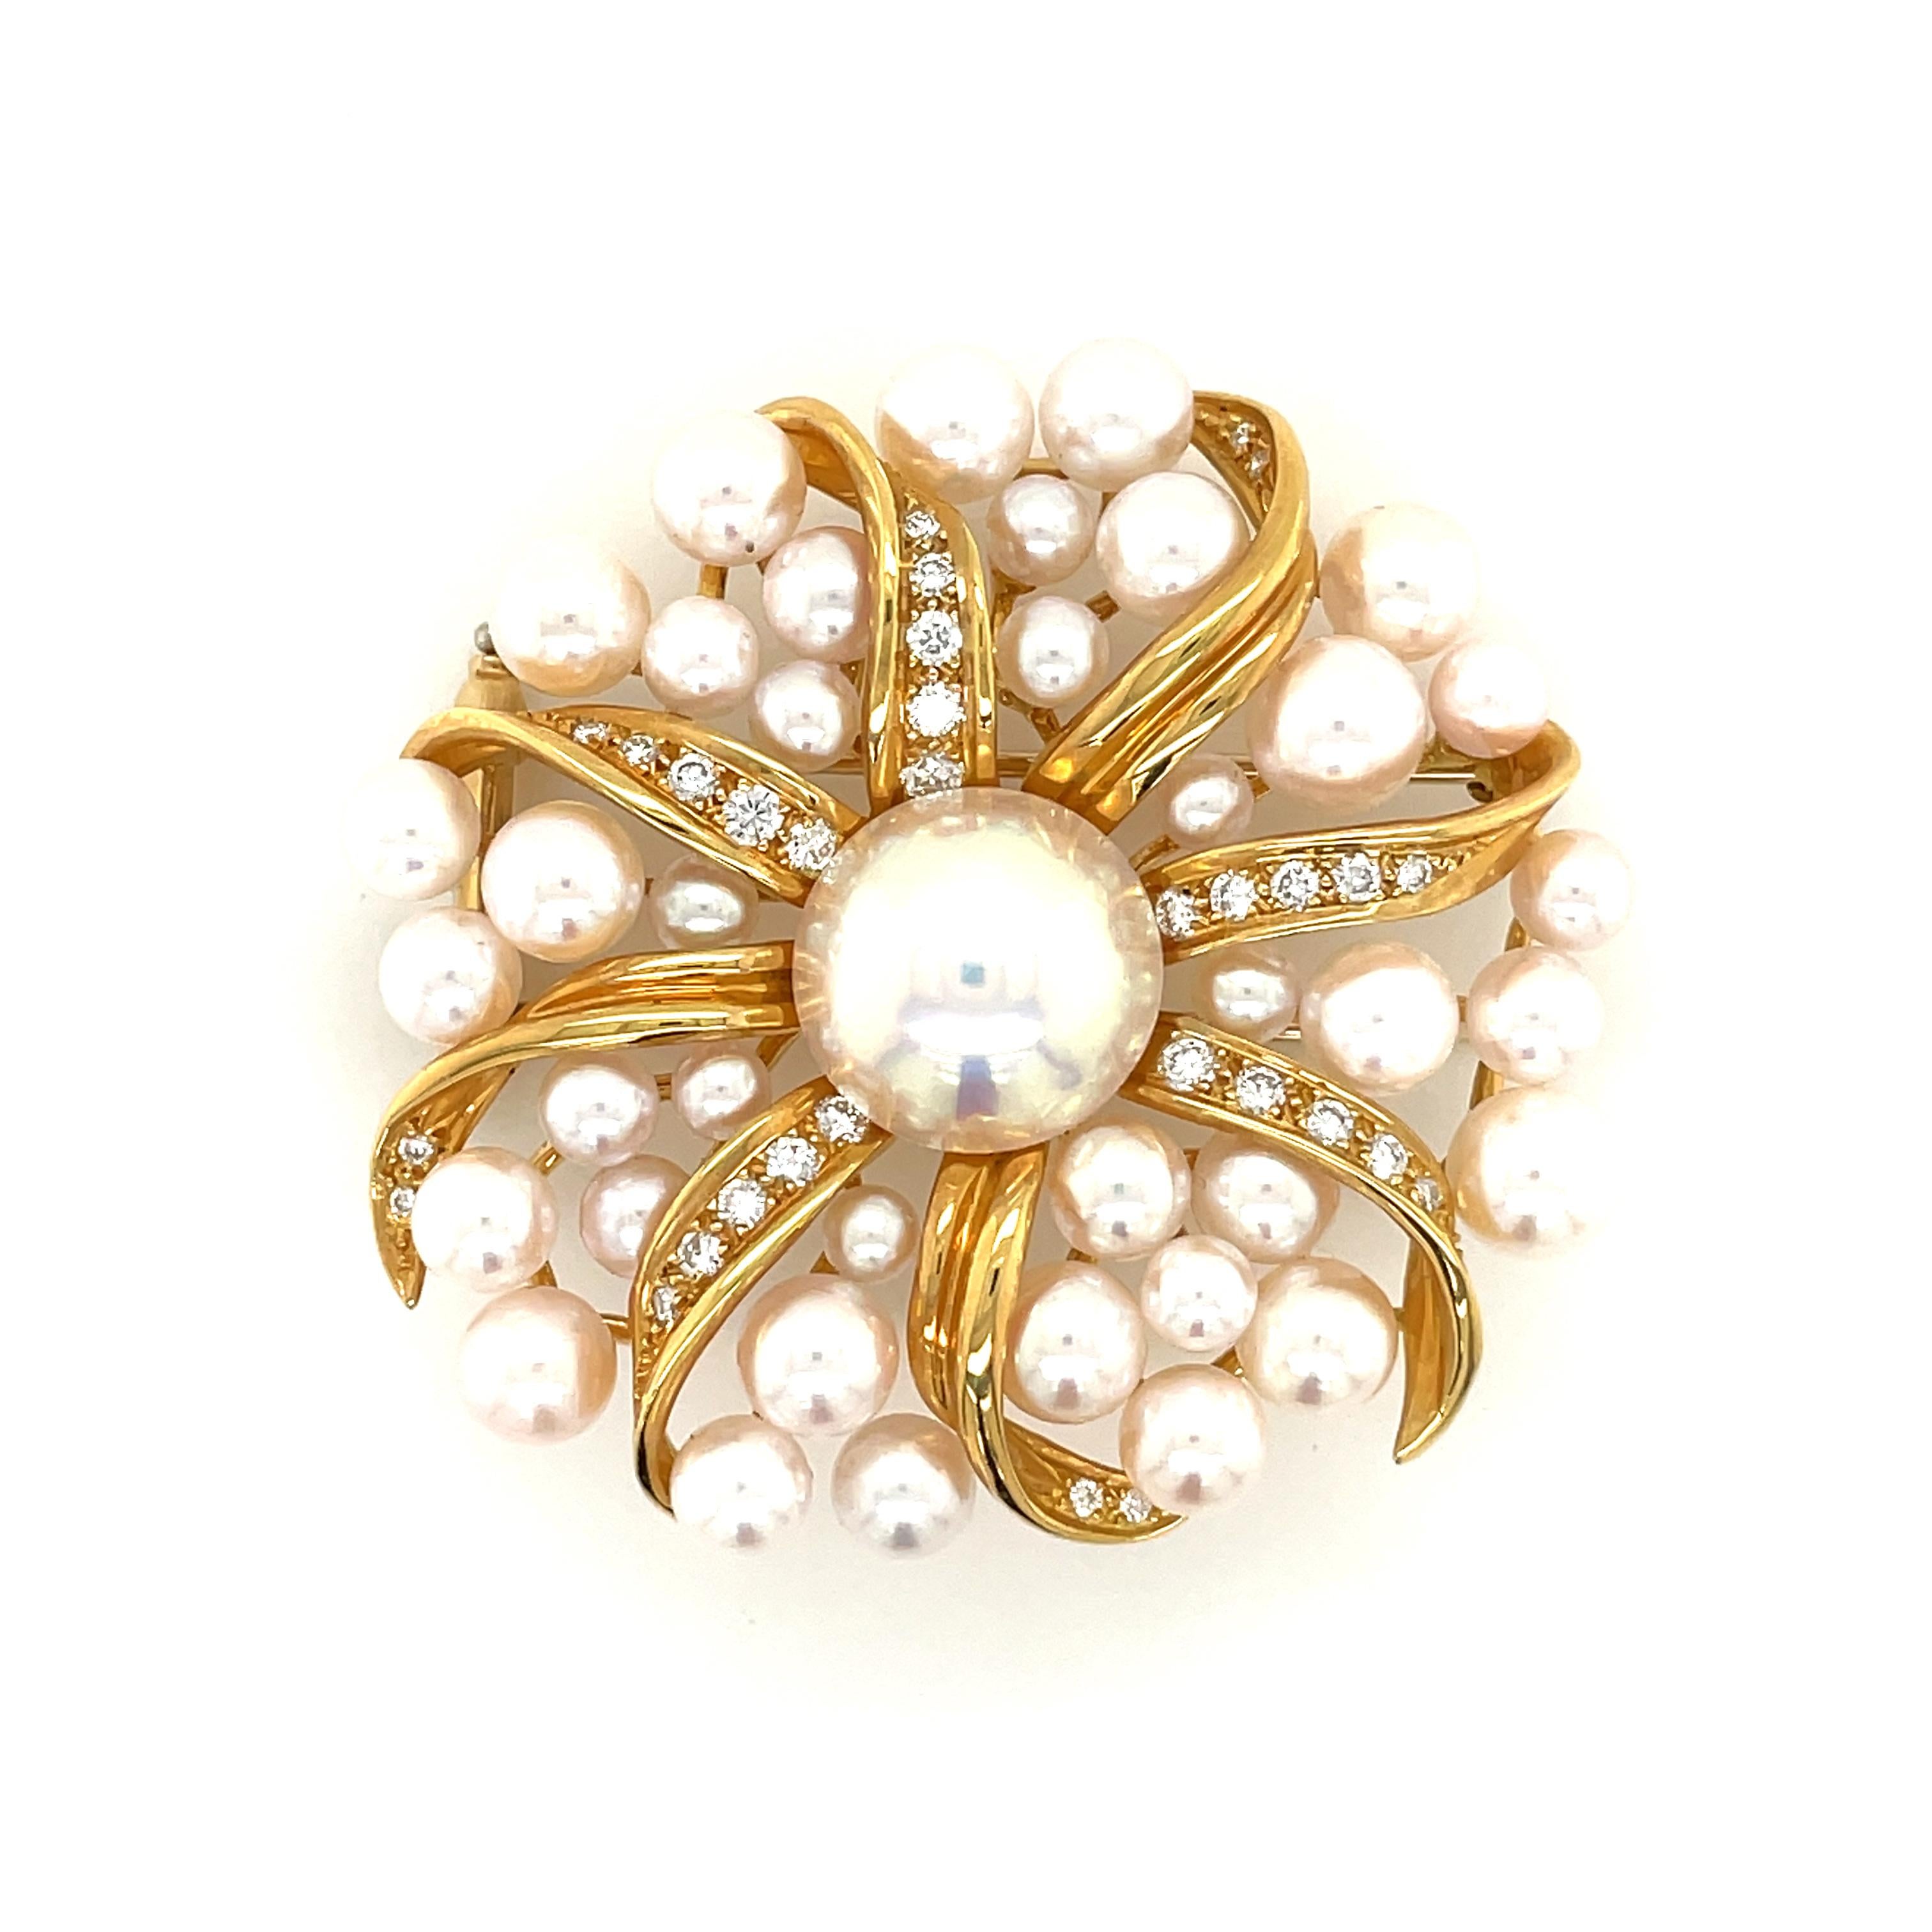 Belle broche provenant de Tiffany & Co, conçue pour ressembler à une fleur, circa 1990'.

La broche a été finement réalisée en or jaune massif 18 carats et est ornée d'une pléthore de perles de 5,5 mm à 8,5 mm et d'une grosse perle Mabe au centre.